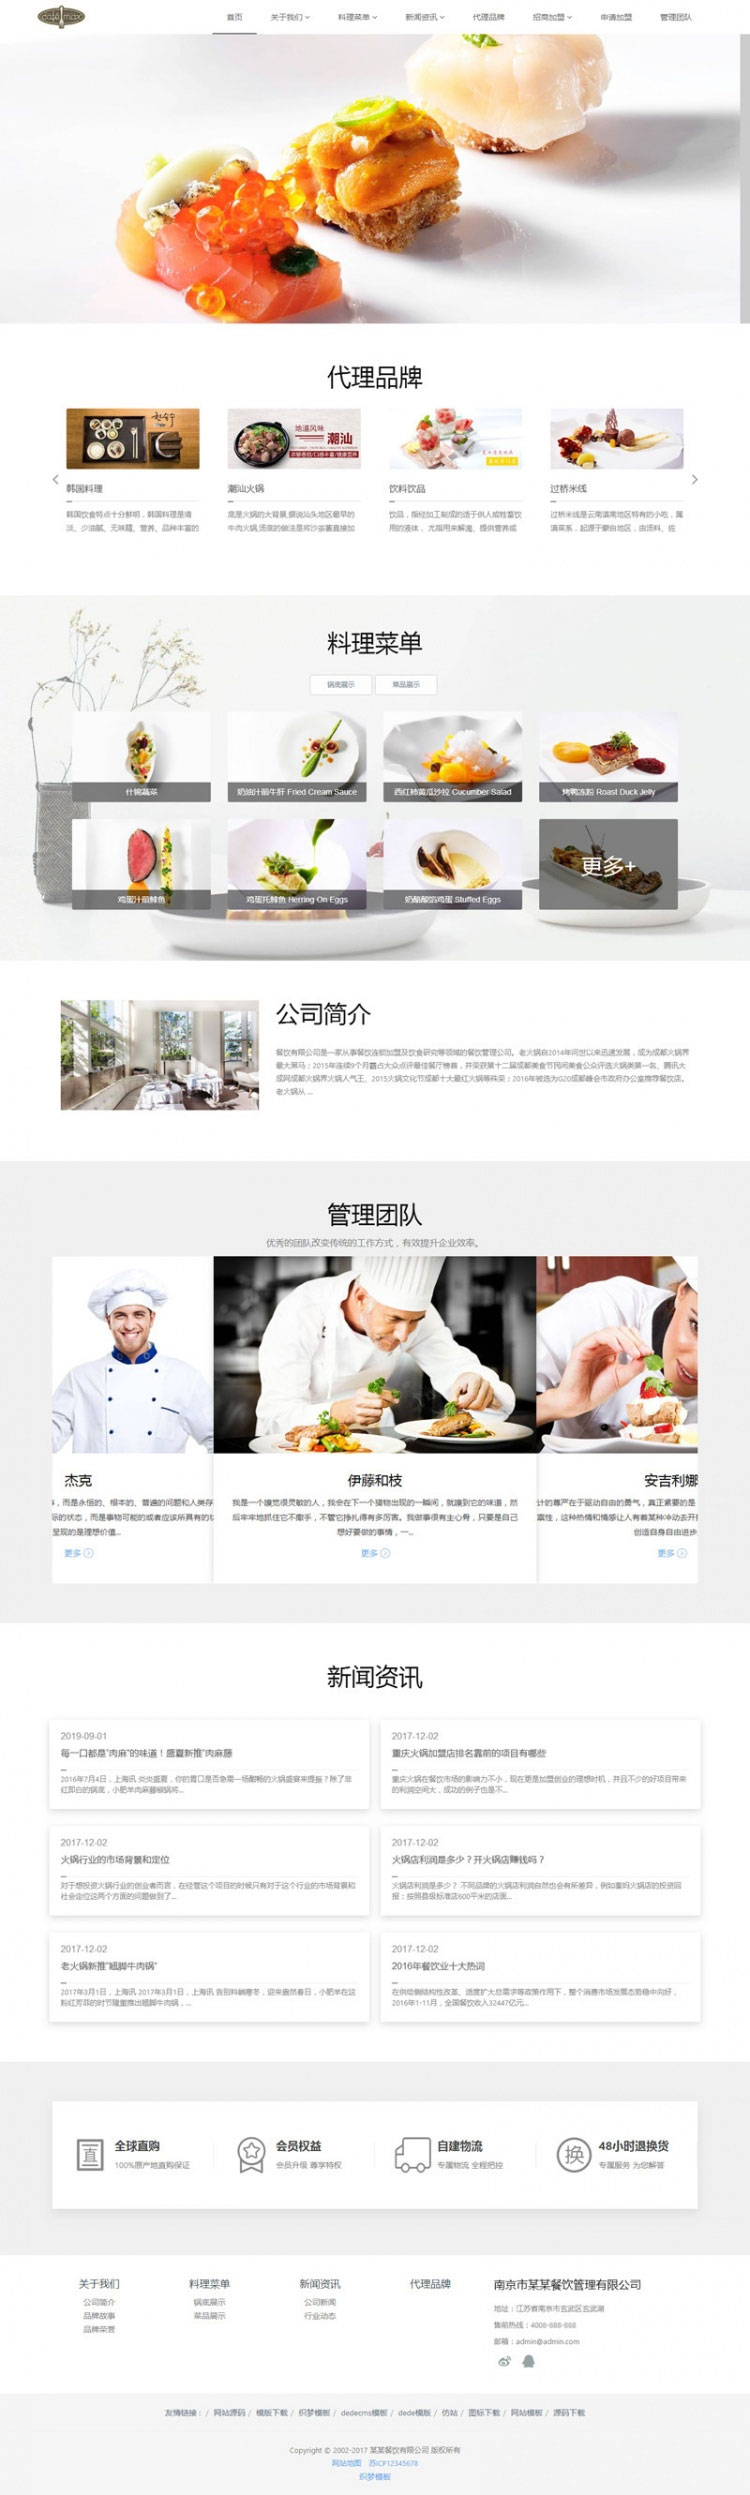 响应式餐饮管理餐饮加盟企业网站源码 织梦dedecms模板 (自适应手机移动端)